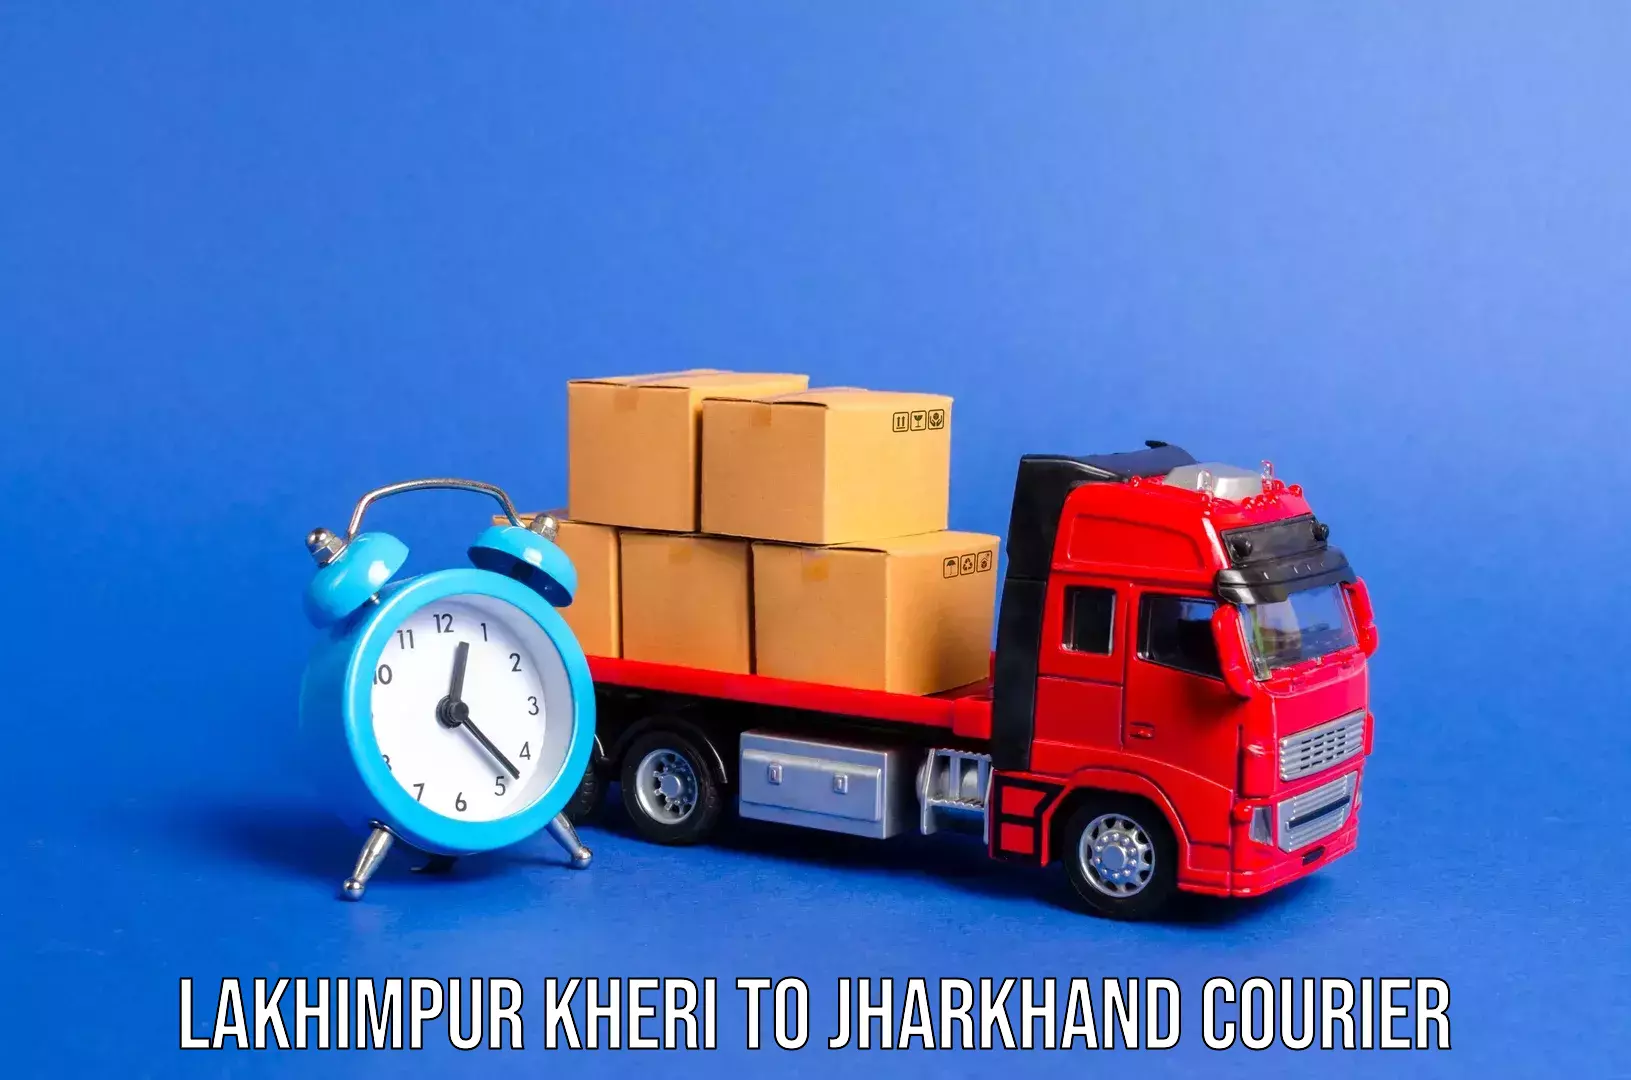 Luggage transfer service Lakhimpur Kheri to Dhanbad